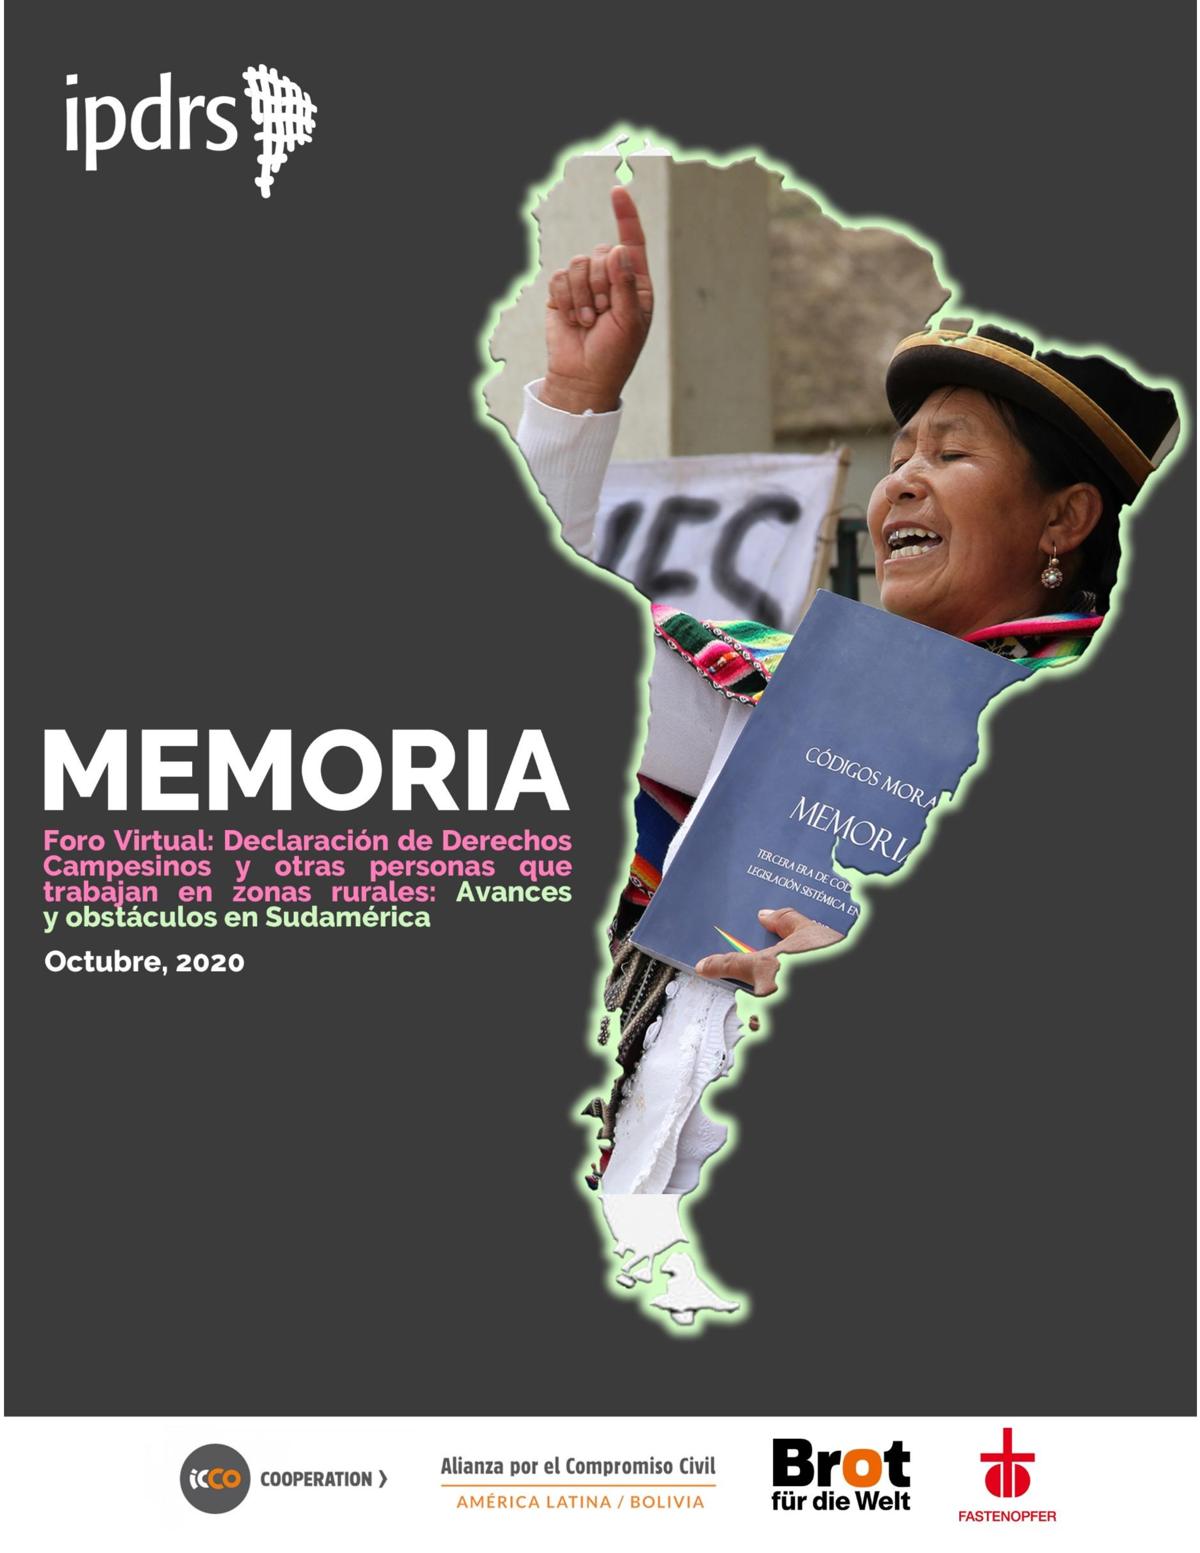 Memoria Foro Virtual: Avances y obstáculos para la ratificación de la Declaración de las Naciones Unidas sobre los Derechos de los Campesinos y de Otras Personas que Trabajan en las Zonas Rurales en Sudamérica